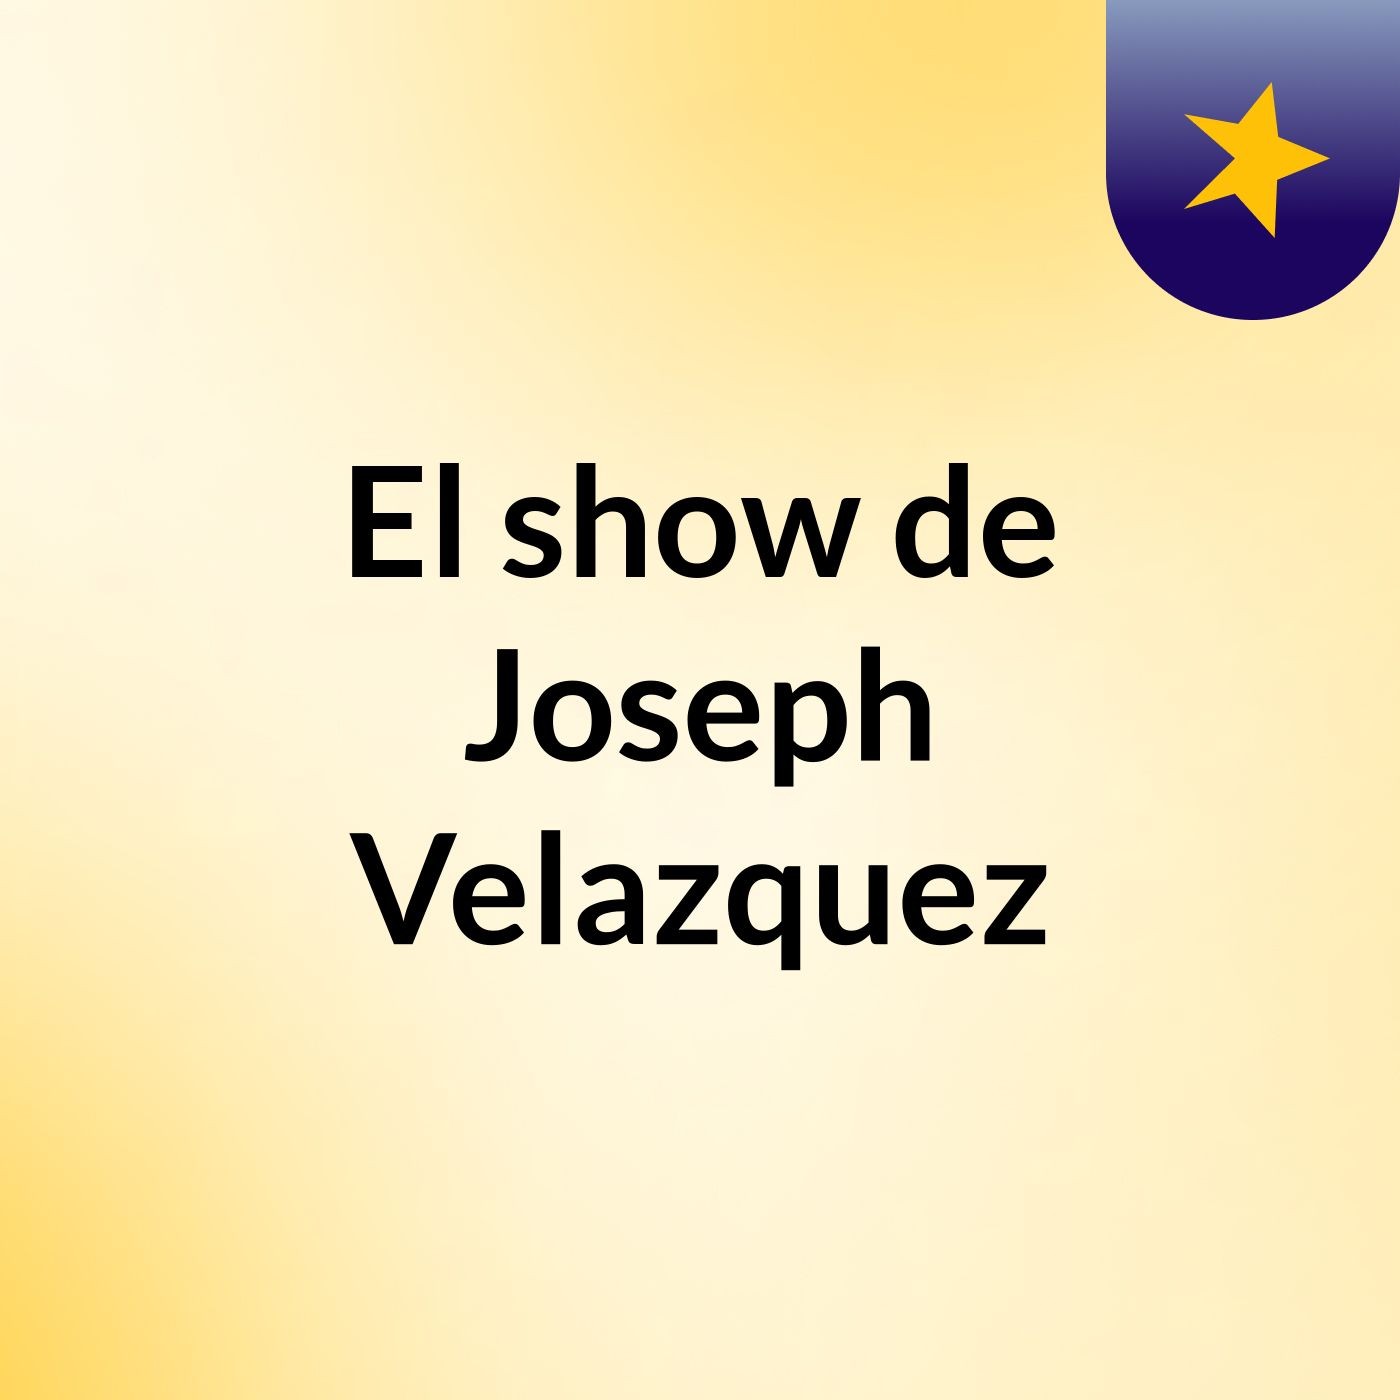 El show de Joseph Velazquez